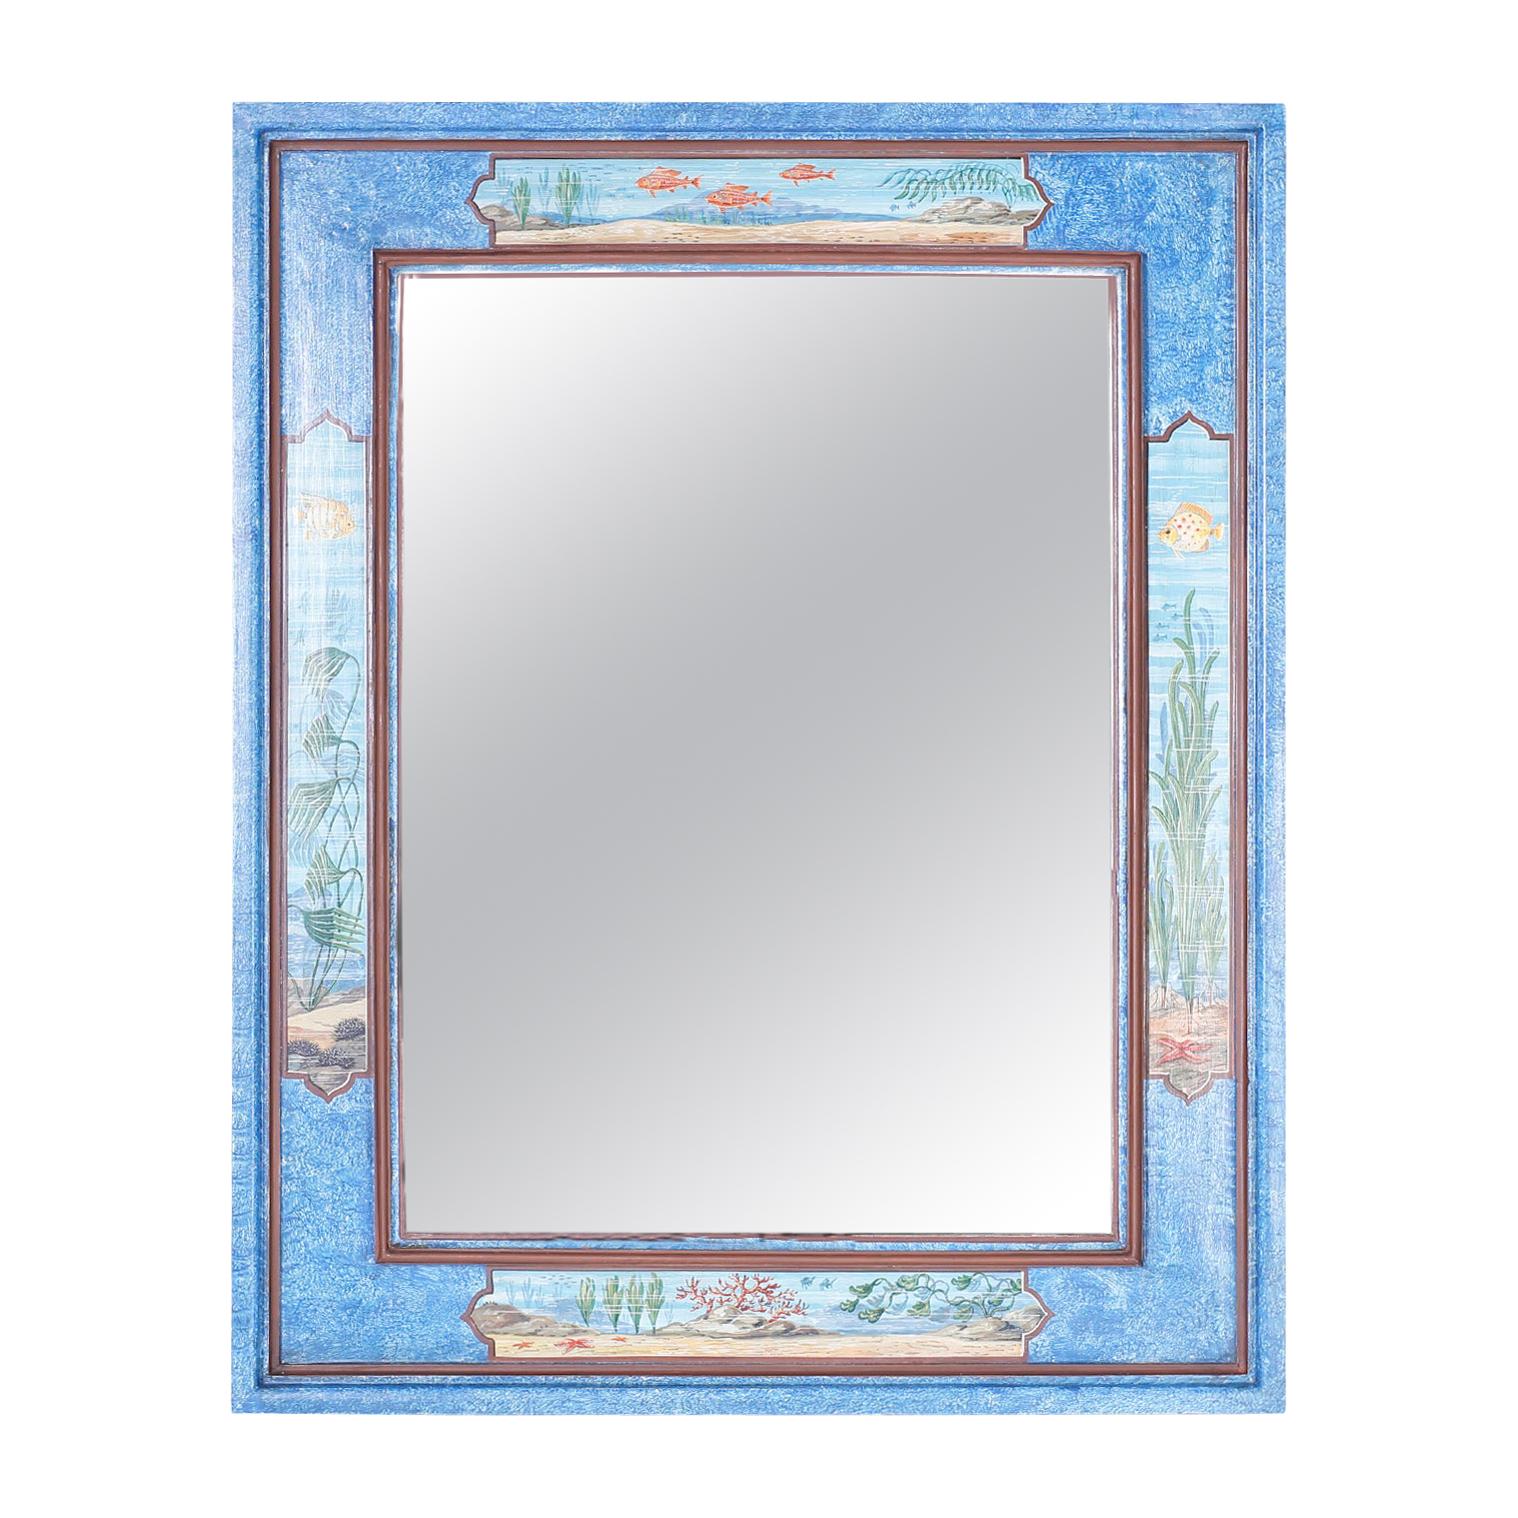 Aquatic Painted Mirror